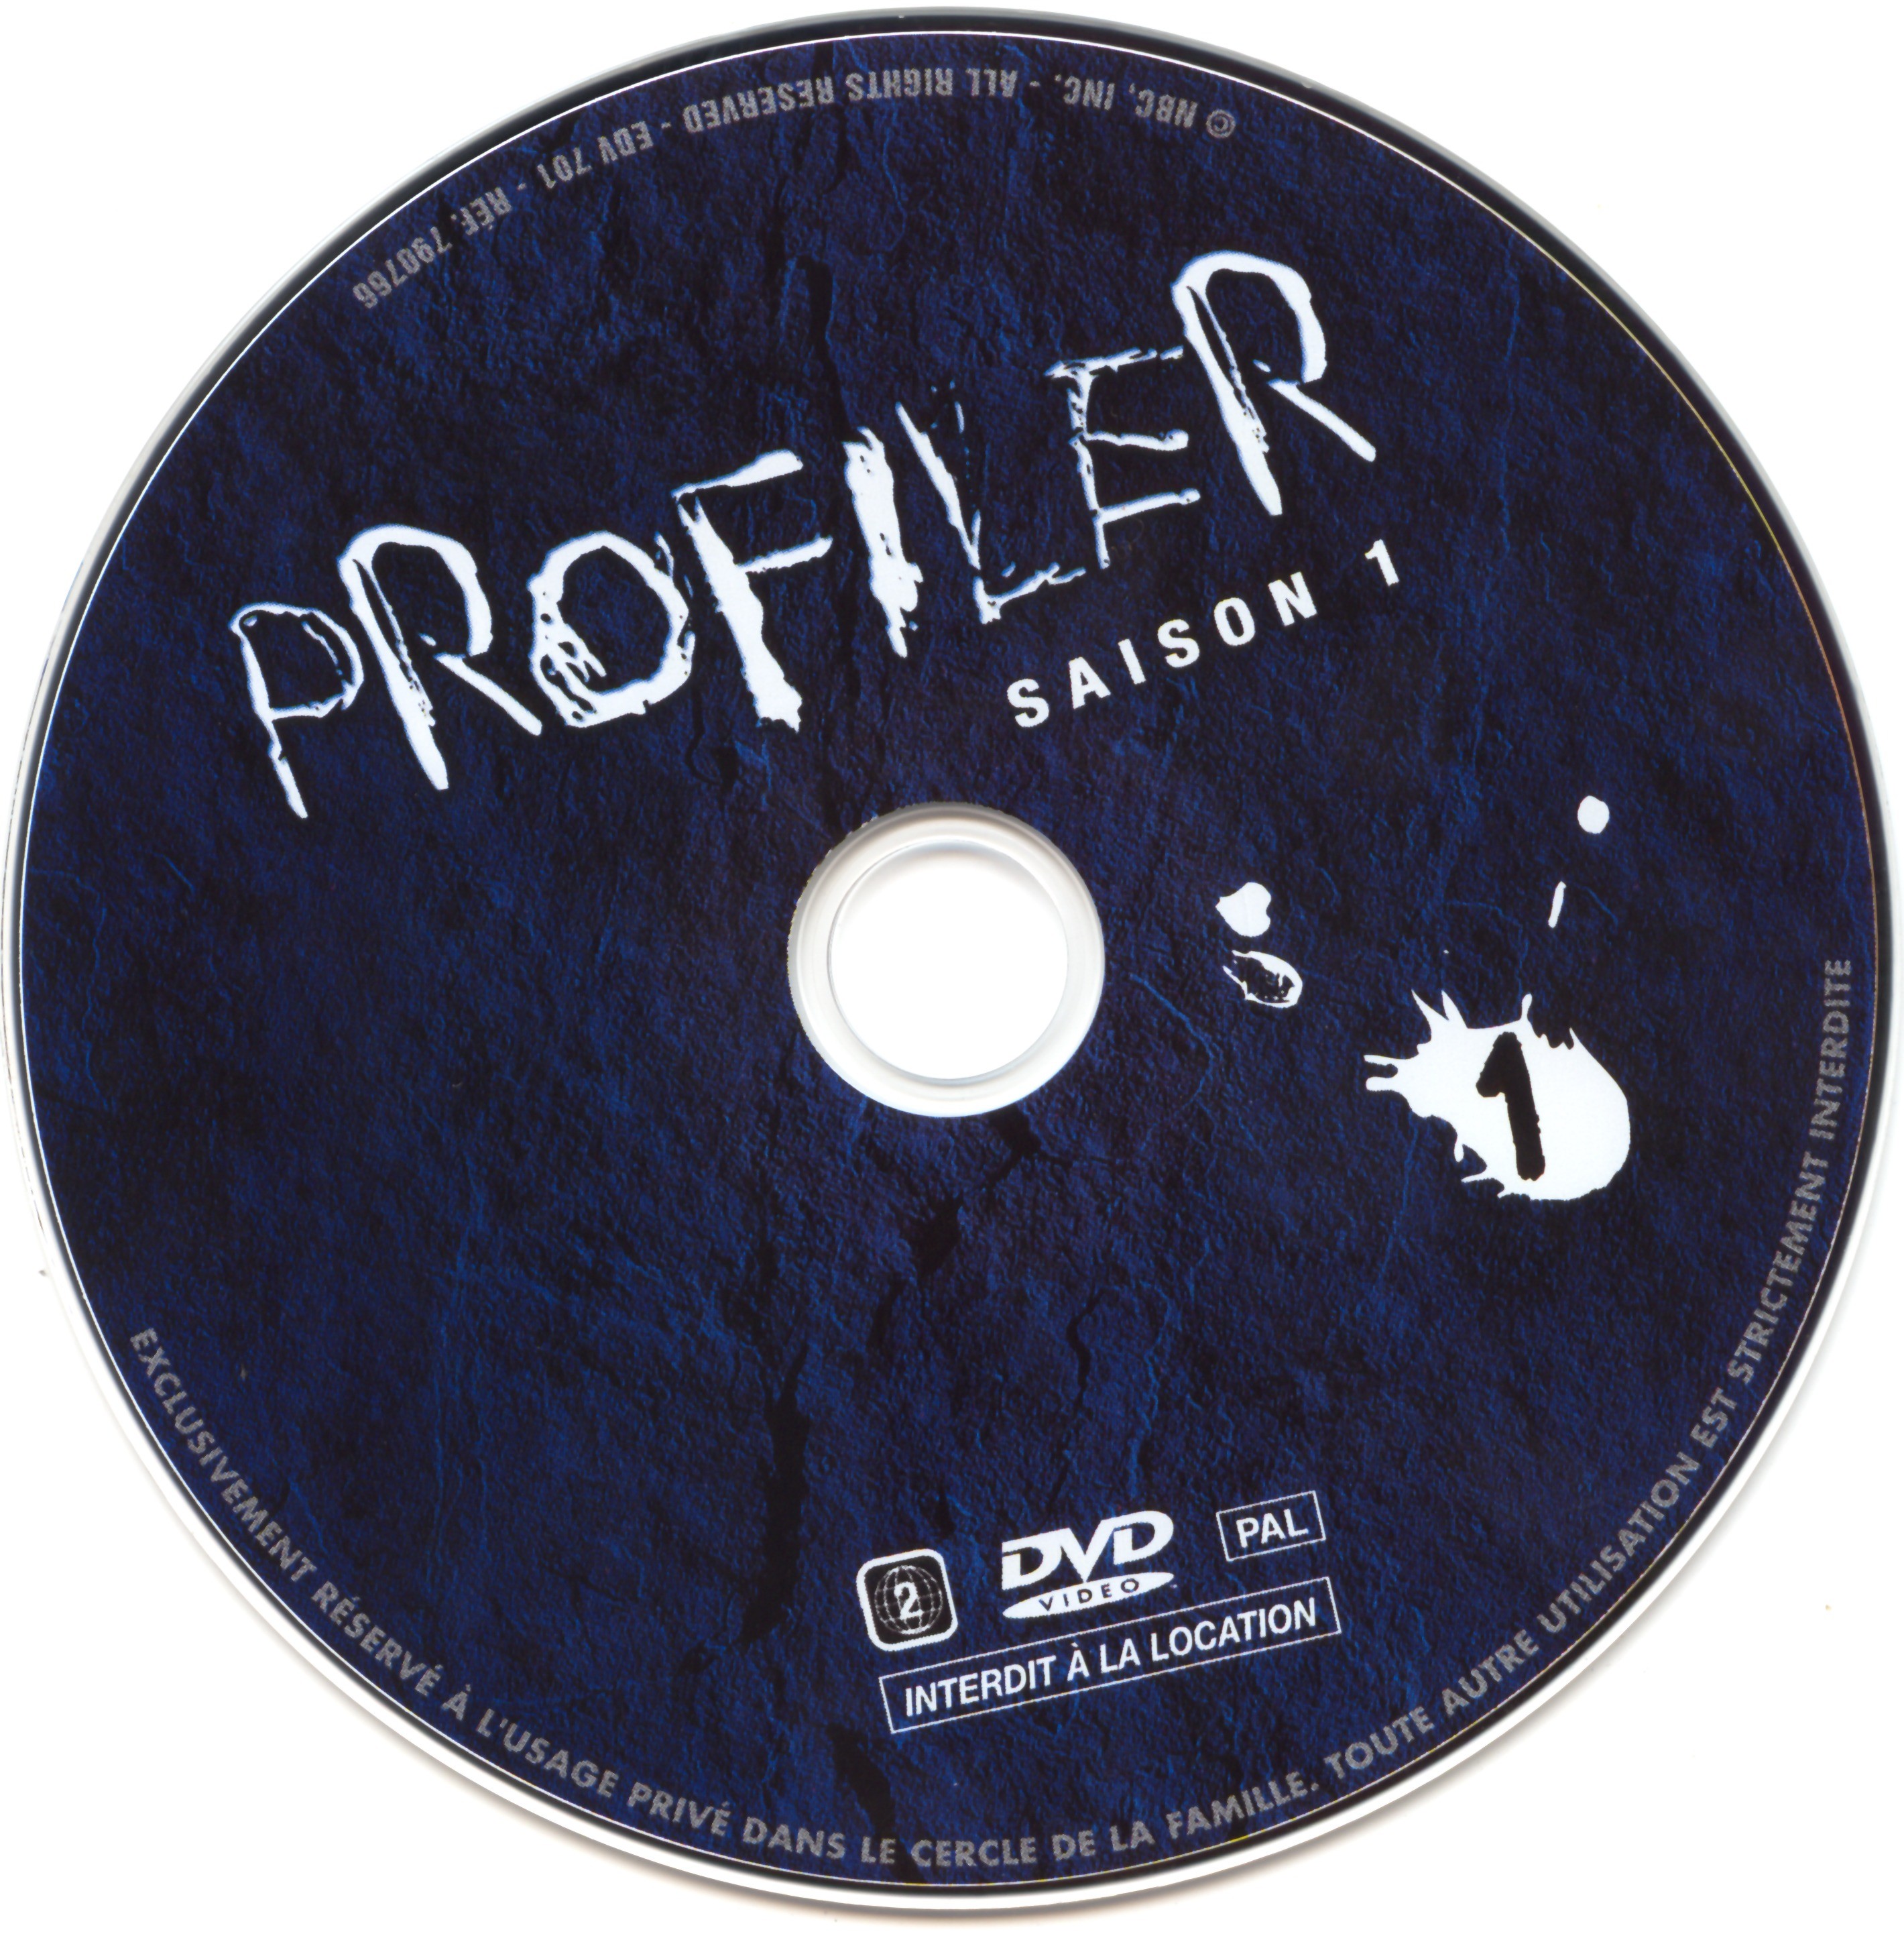 Profiler saison 1 DVD 1